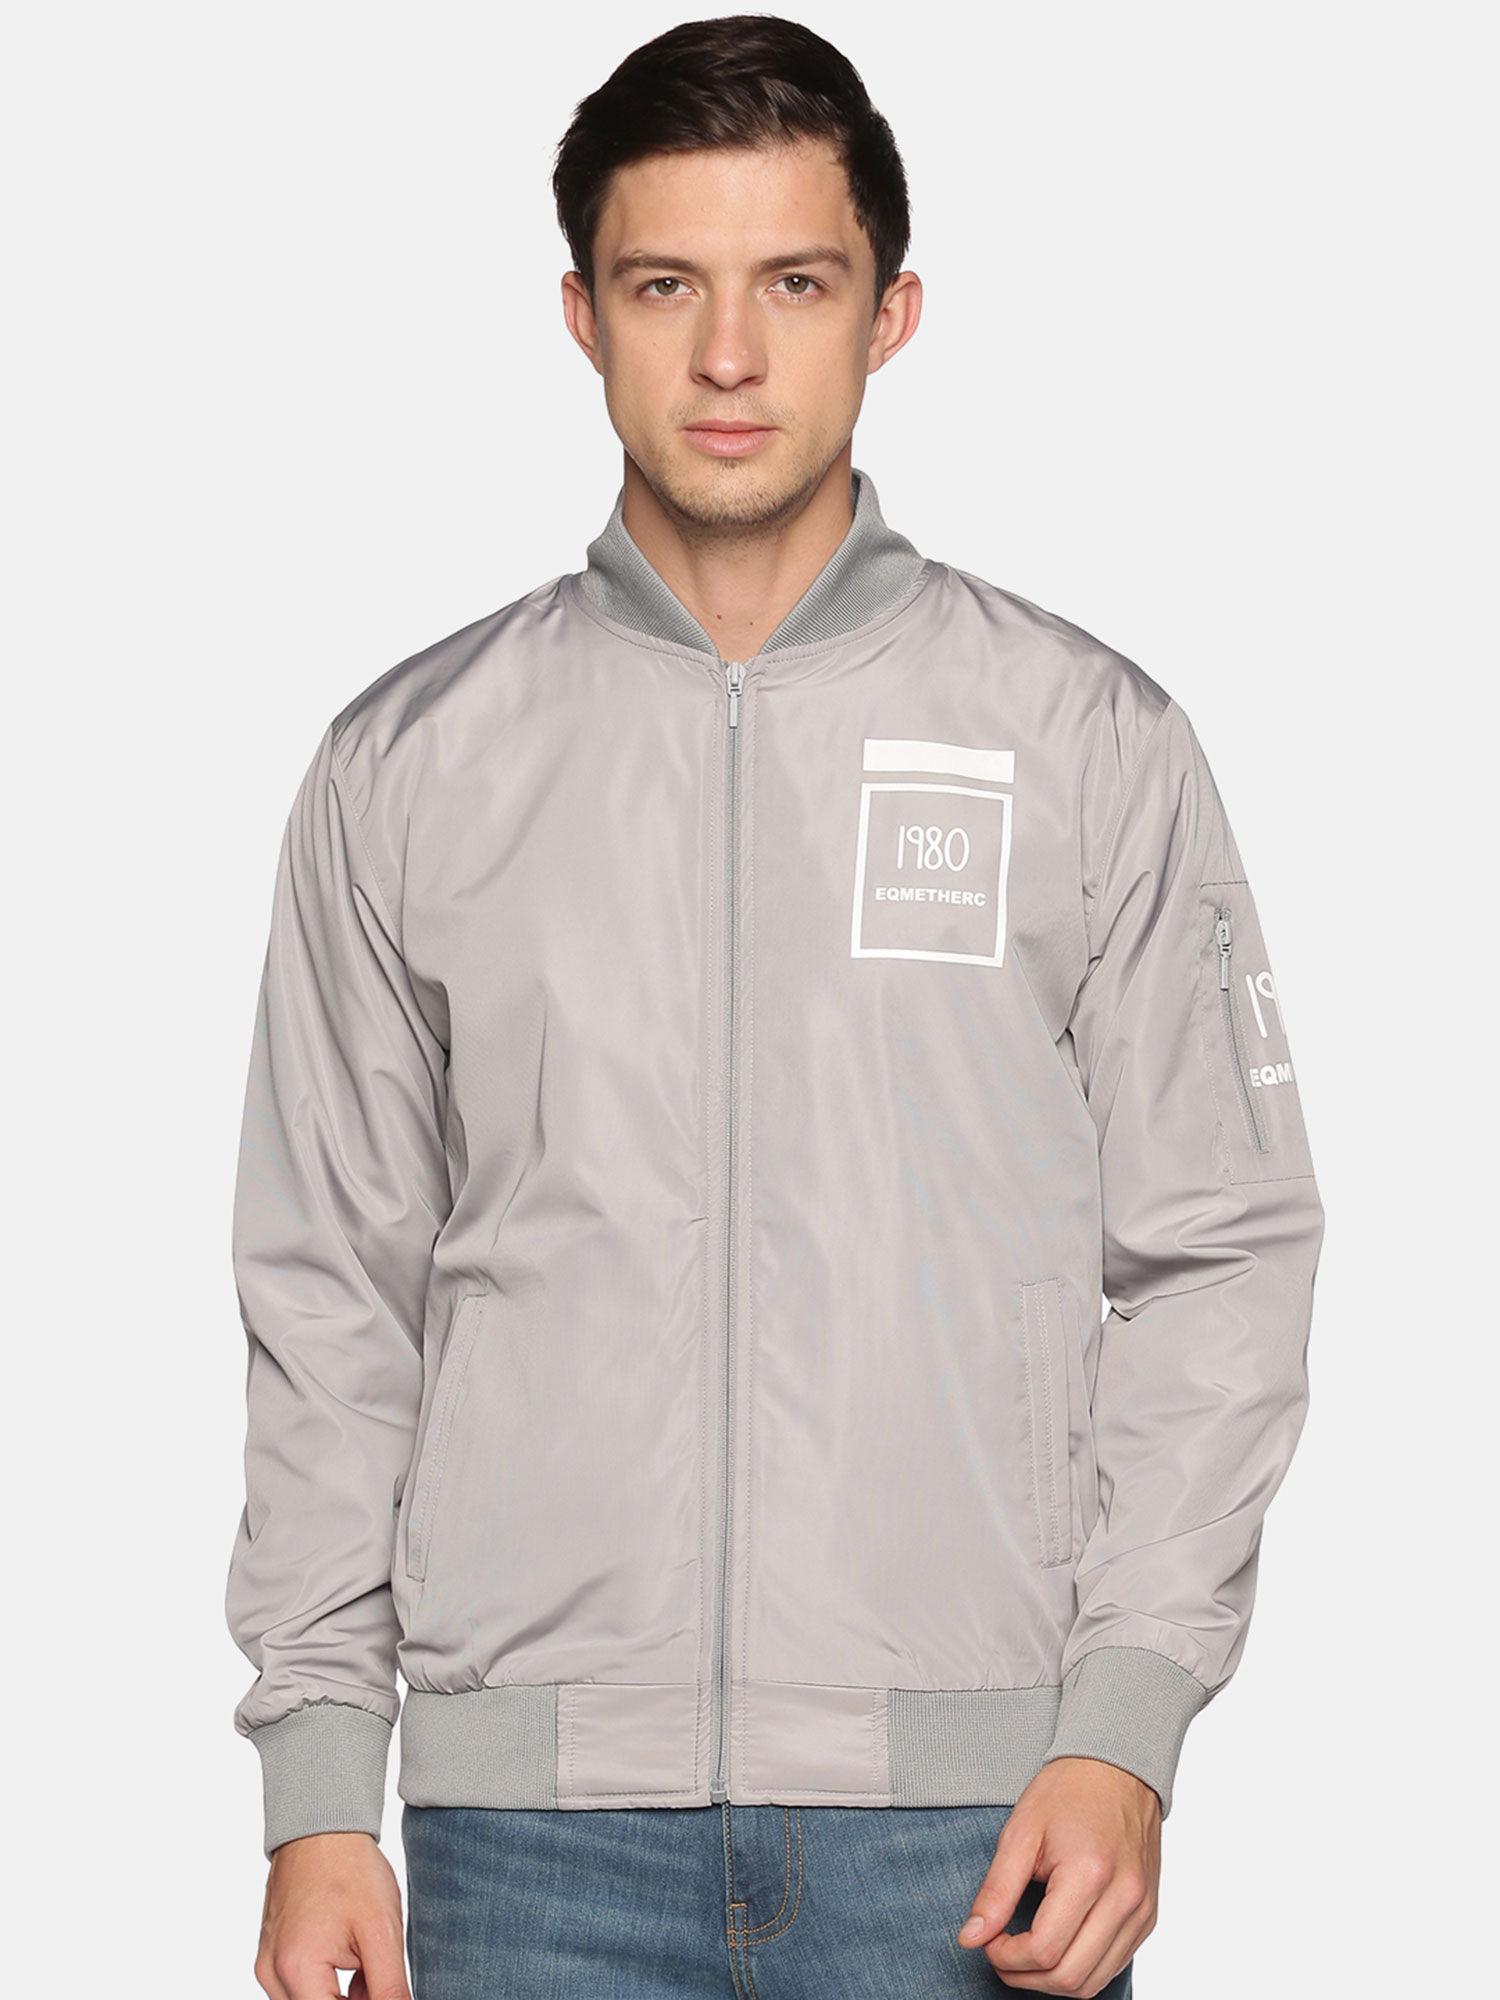 men's-casual-grey-solid-jacket